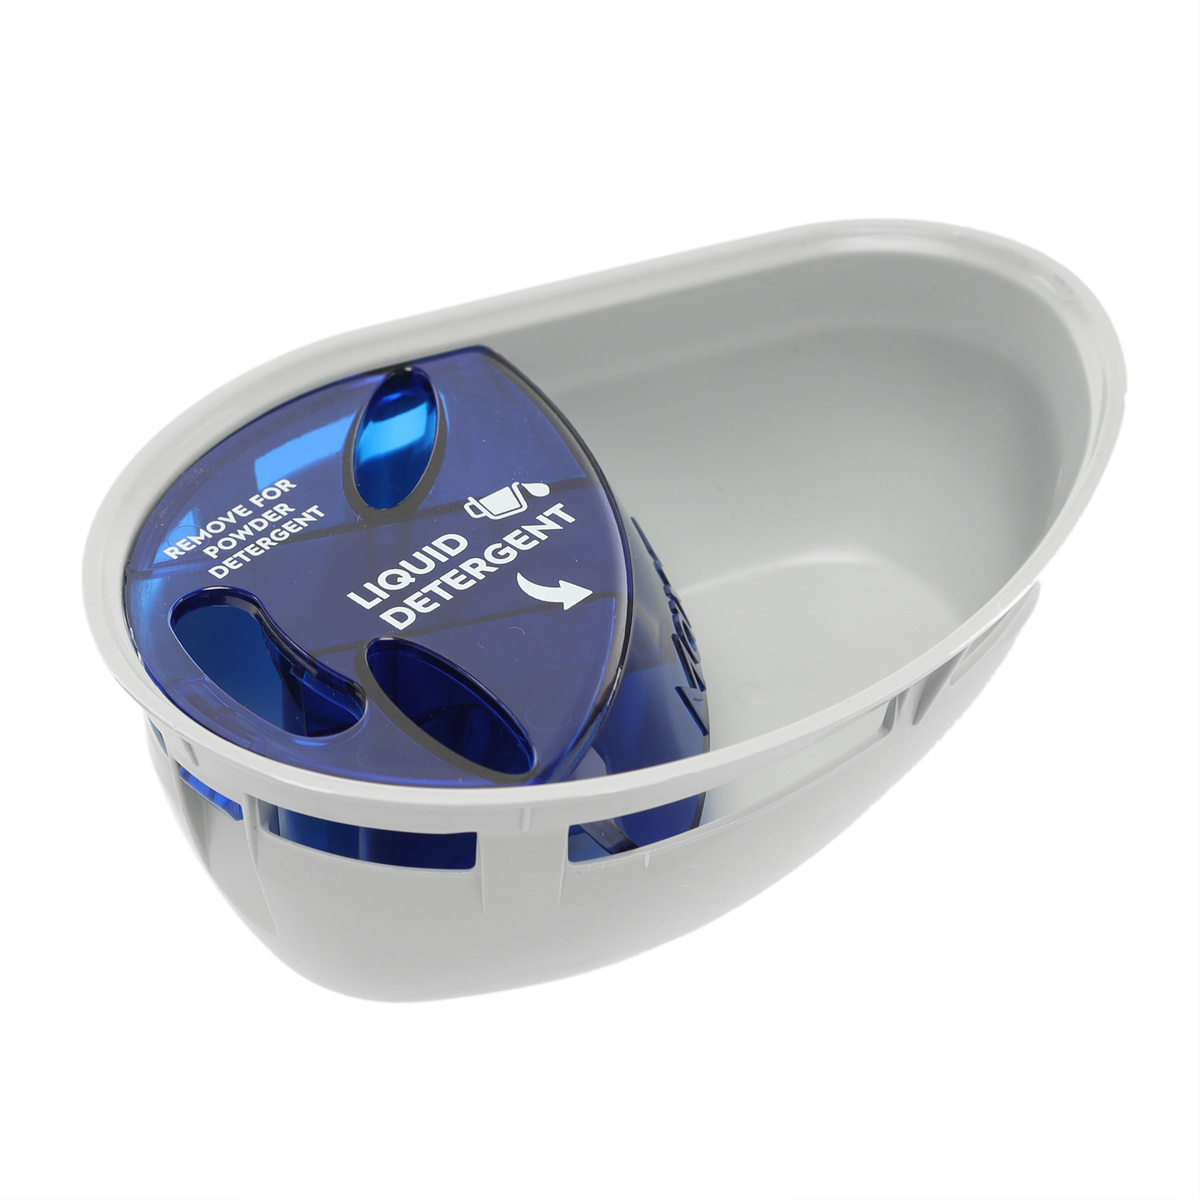 Frigidaire Washer Liquid Detergent Dispenser Cup. Part #5304514801